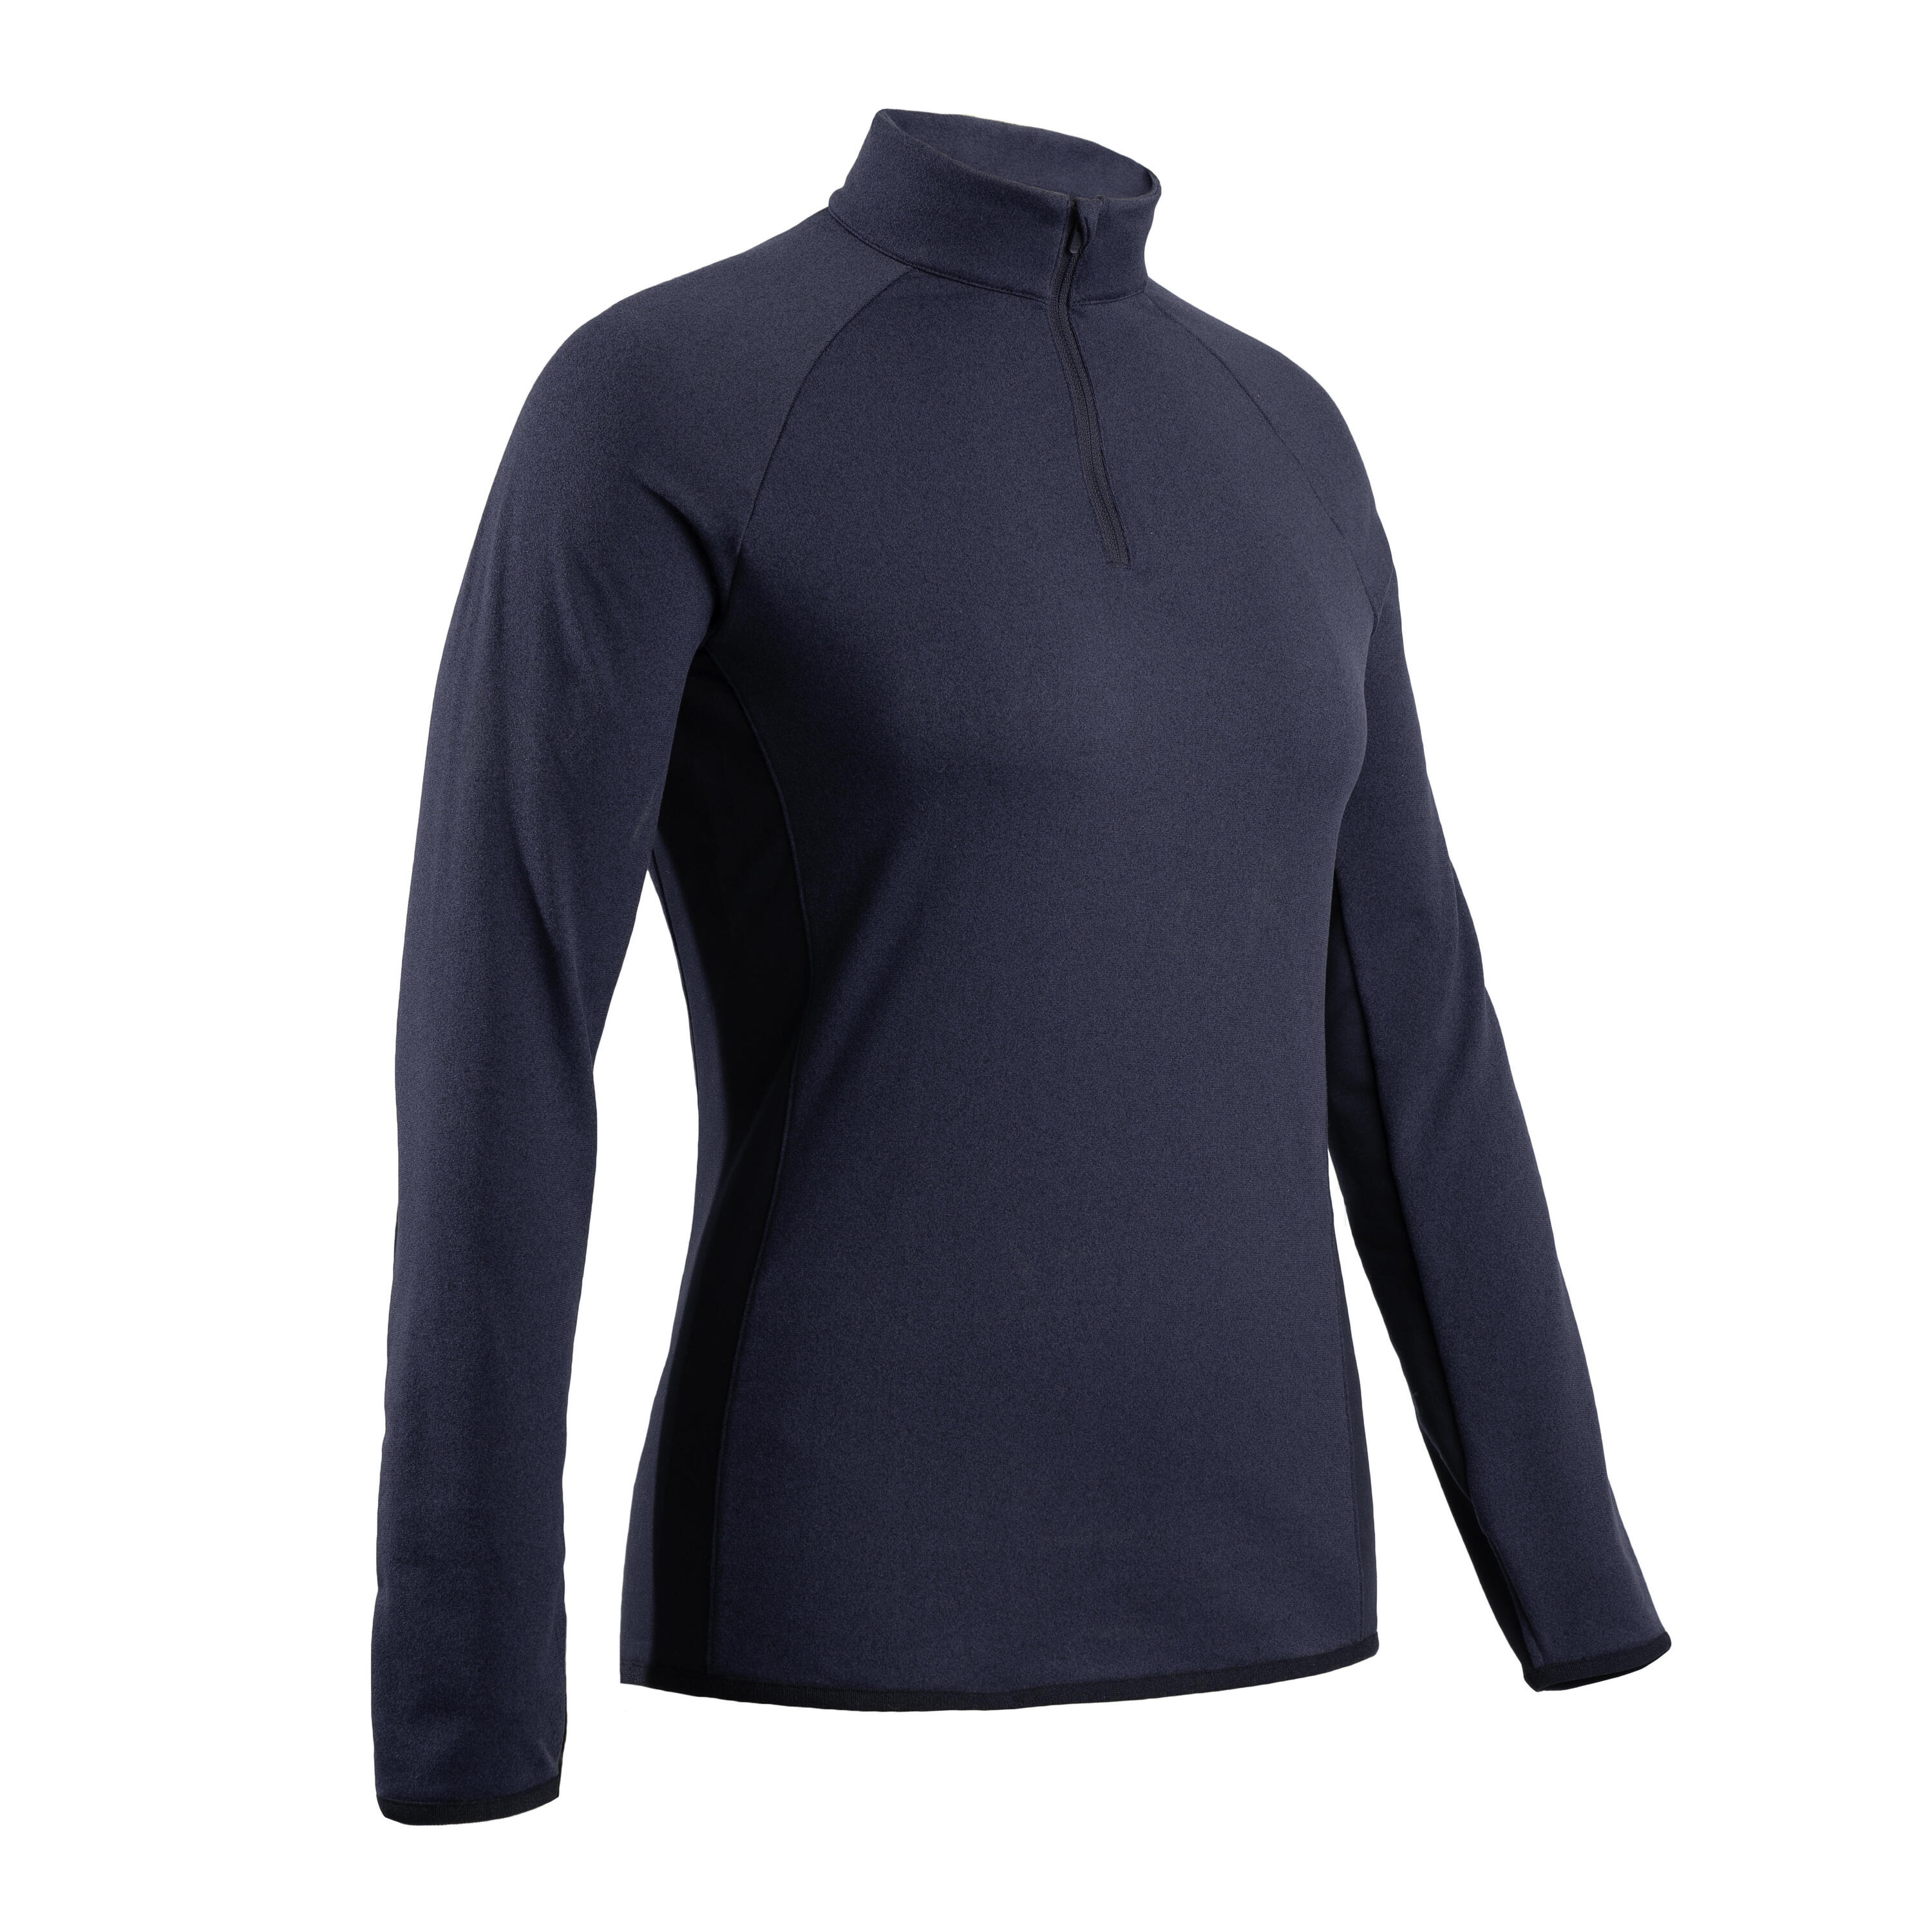 Women's golf fleece pullover CW500 navy blue 5/5